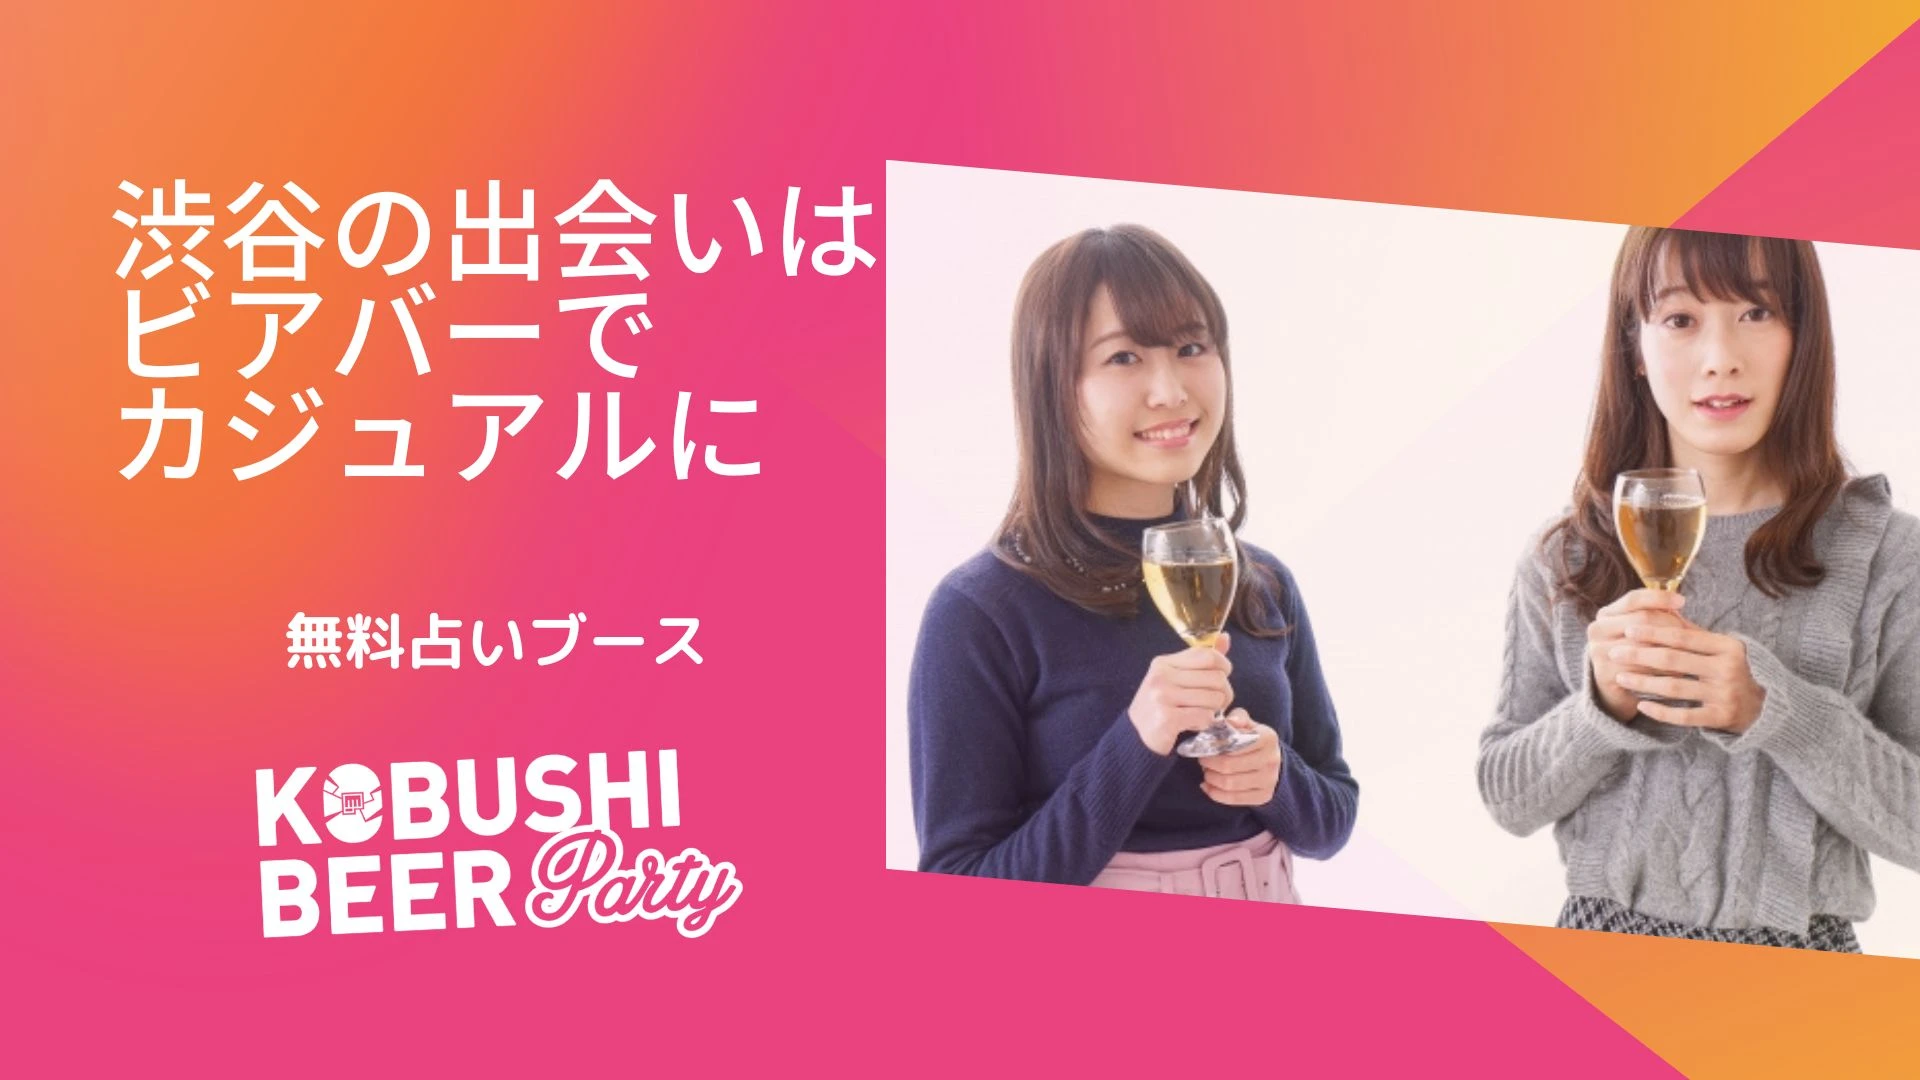 【東京の街コン】KOBUSHI BEER LOUNGE & BAR主催 2022年8月12日